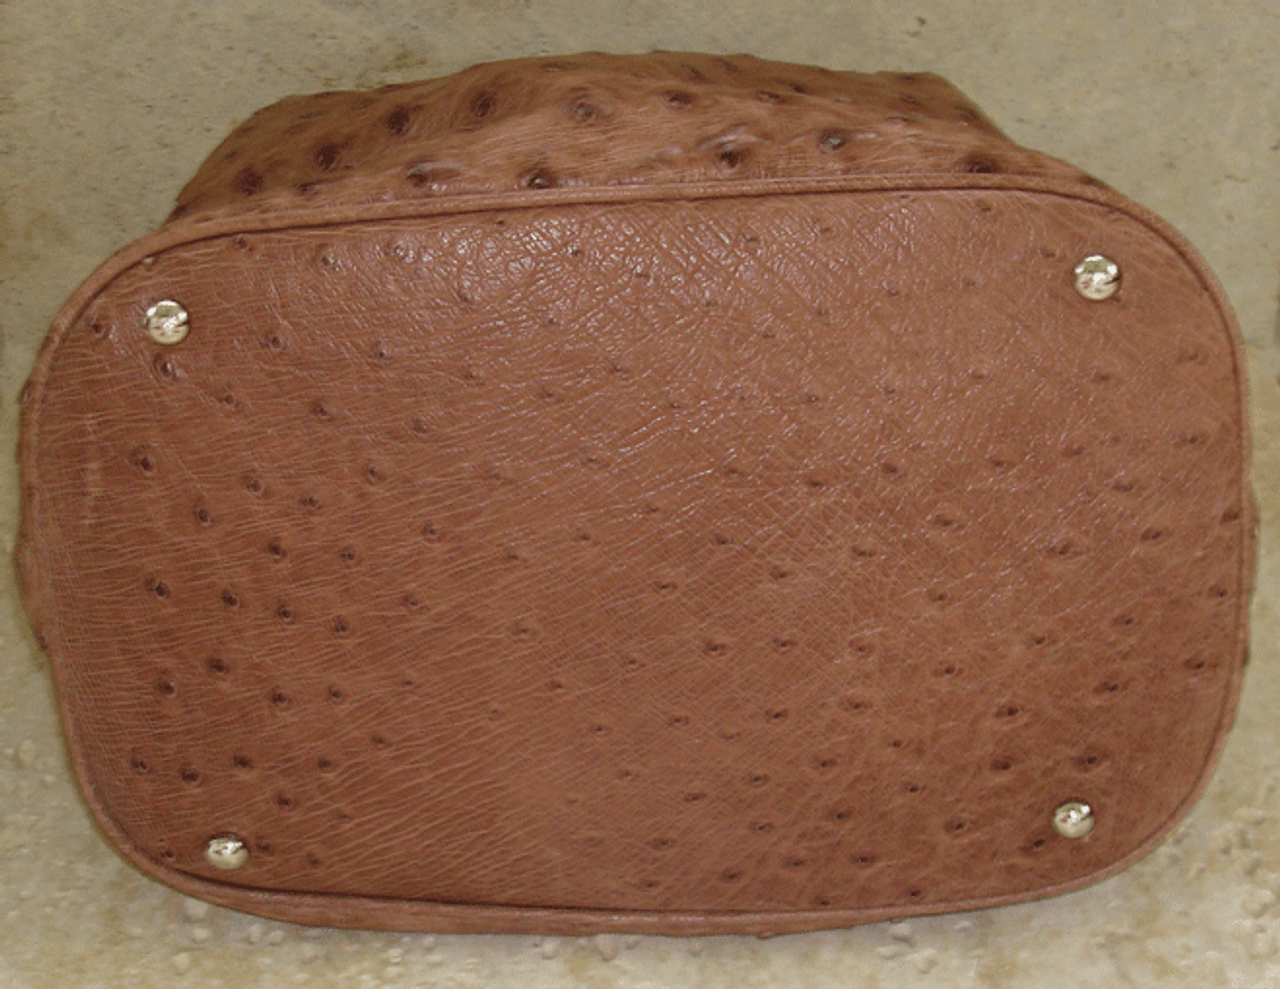 Ostrich skin handbag in Camel color – Lotus Gallery